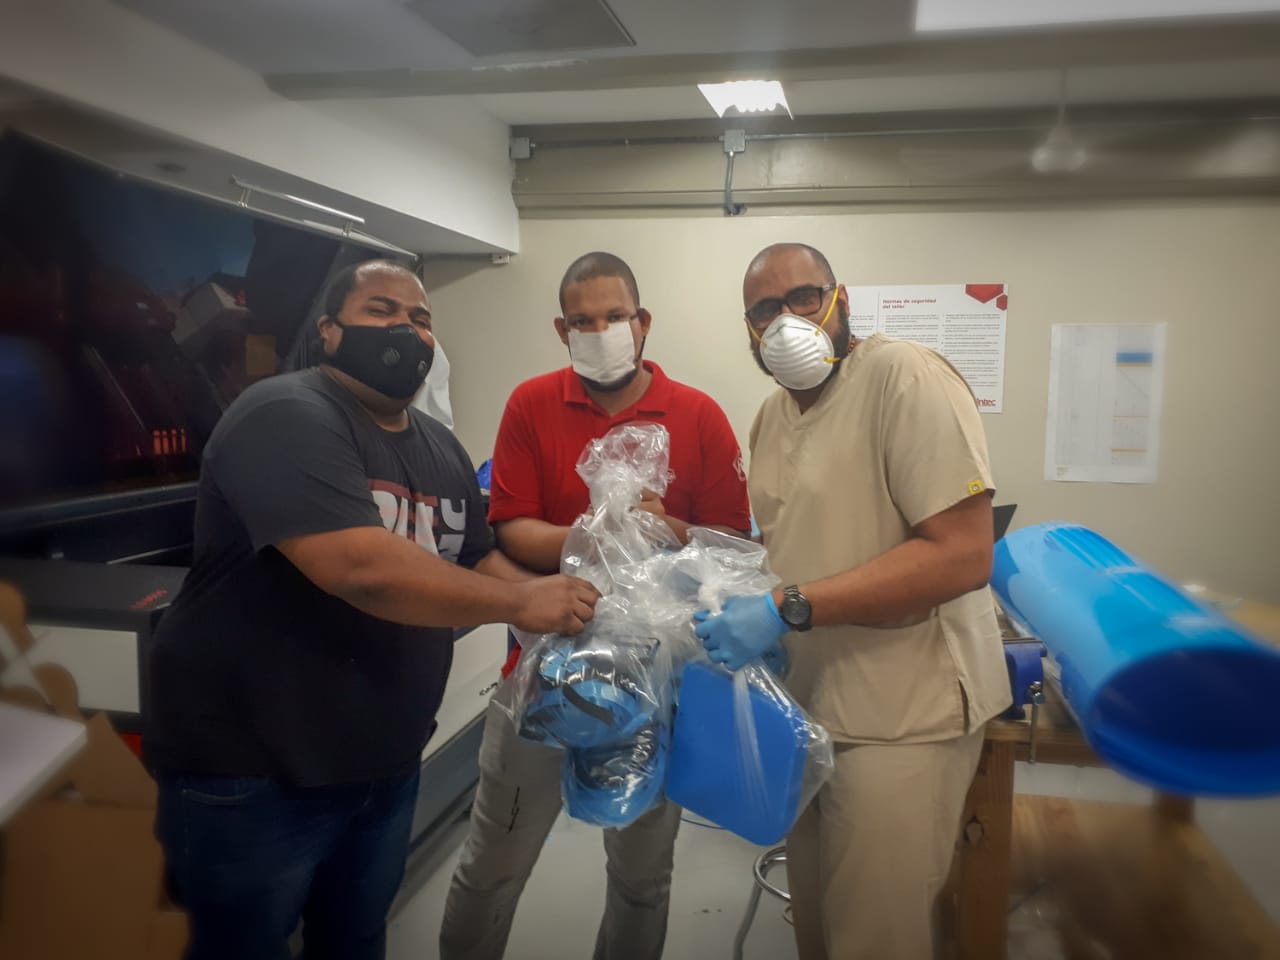 Laboratorios del INTEC fabrican máscaras reutilizables para personal médico; solicitan apoyo para insumos